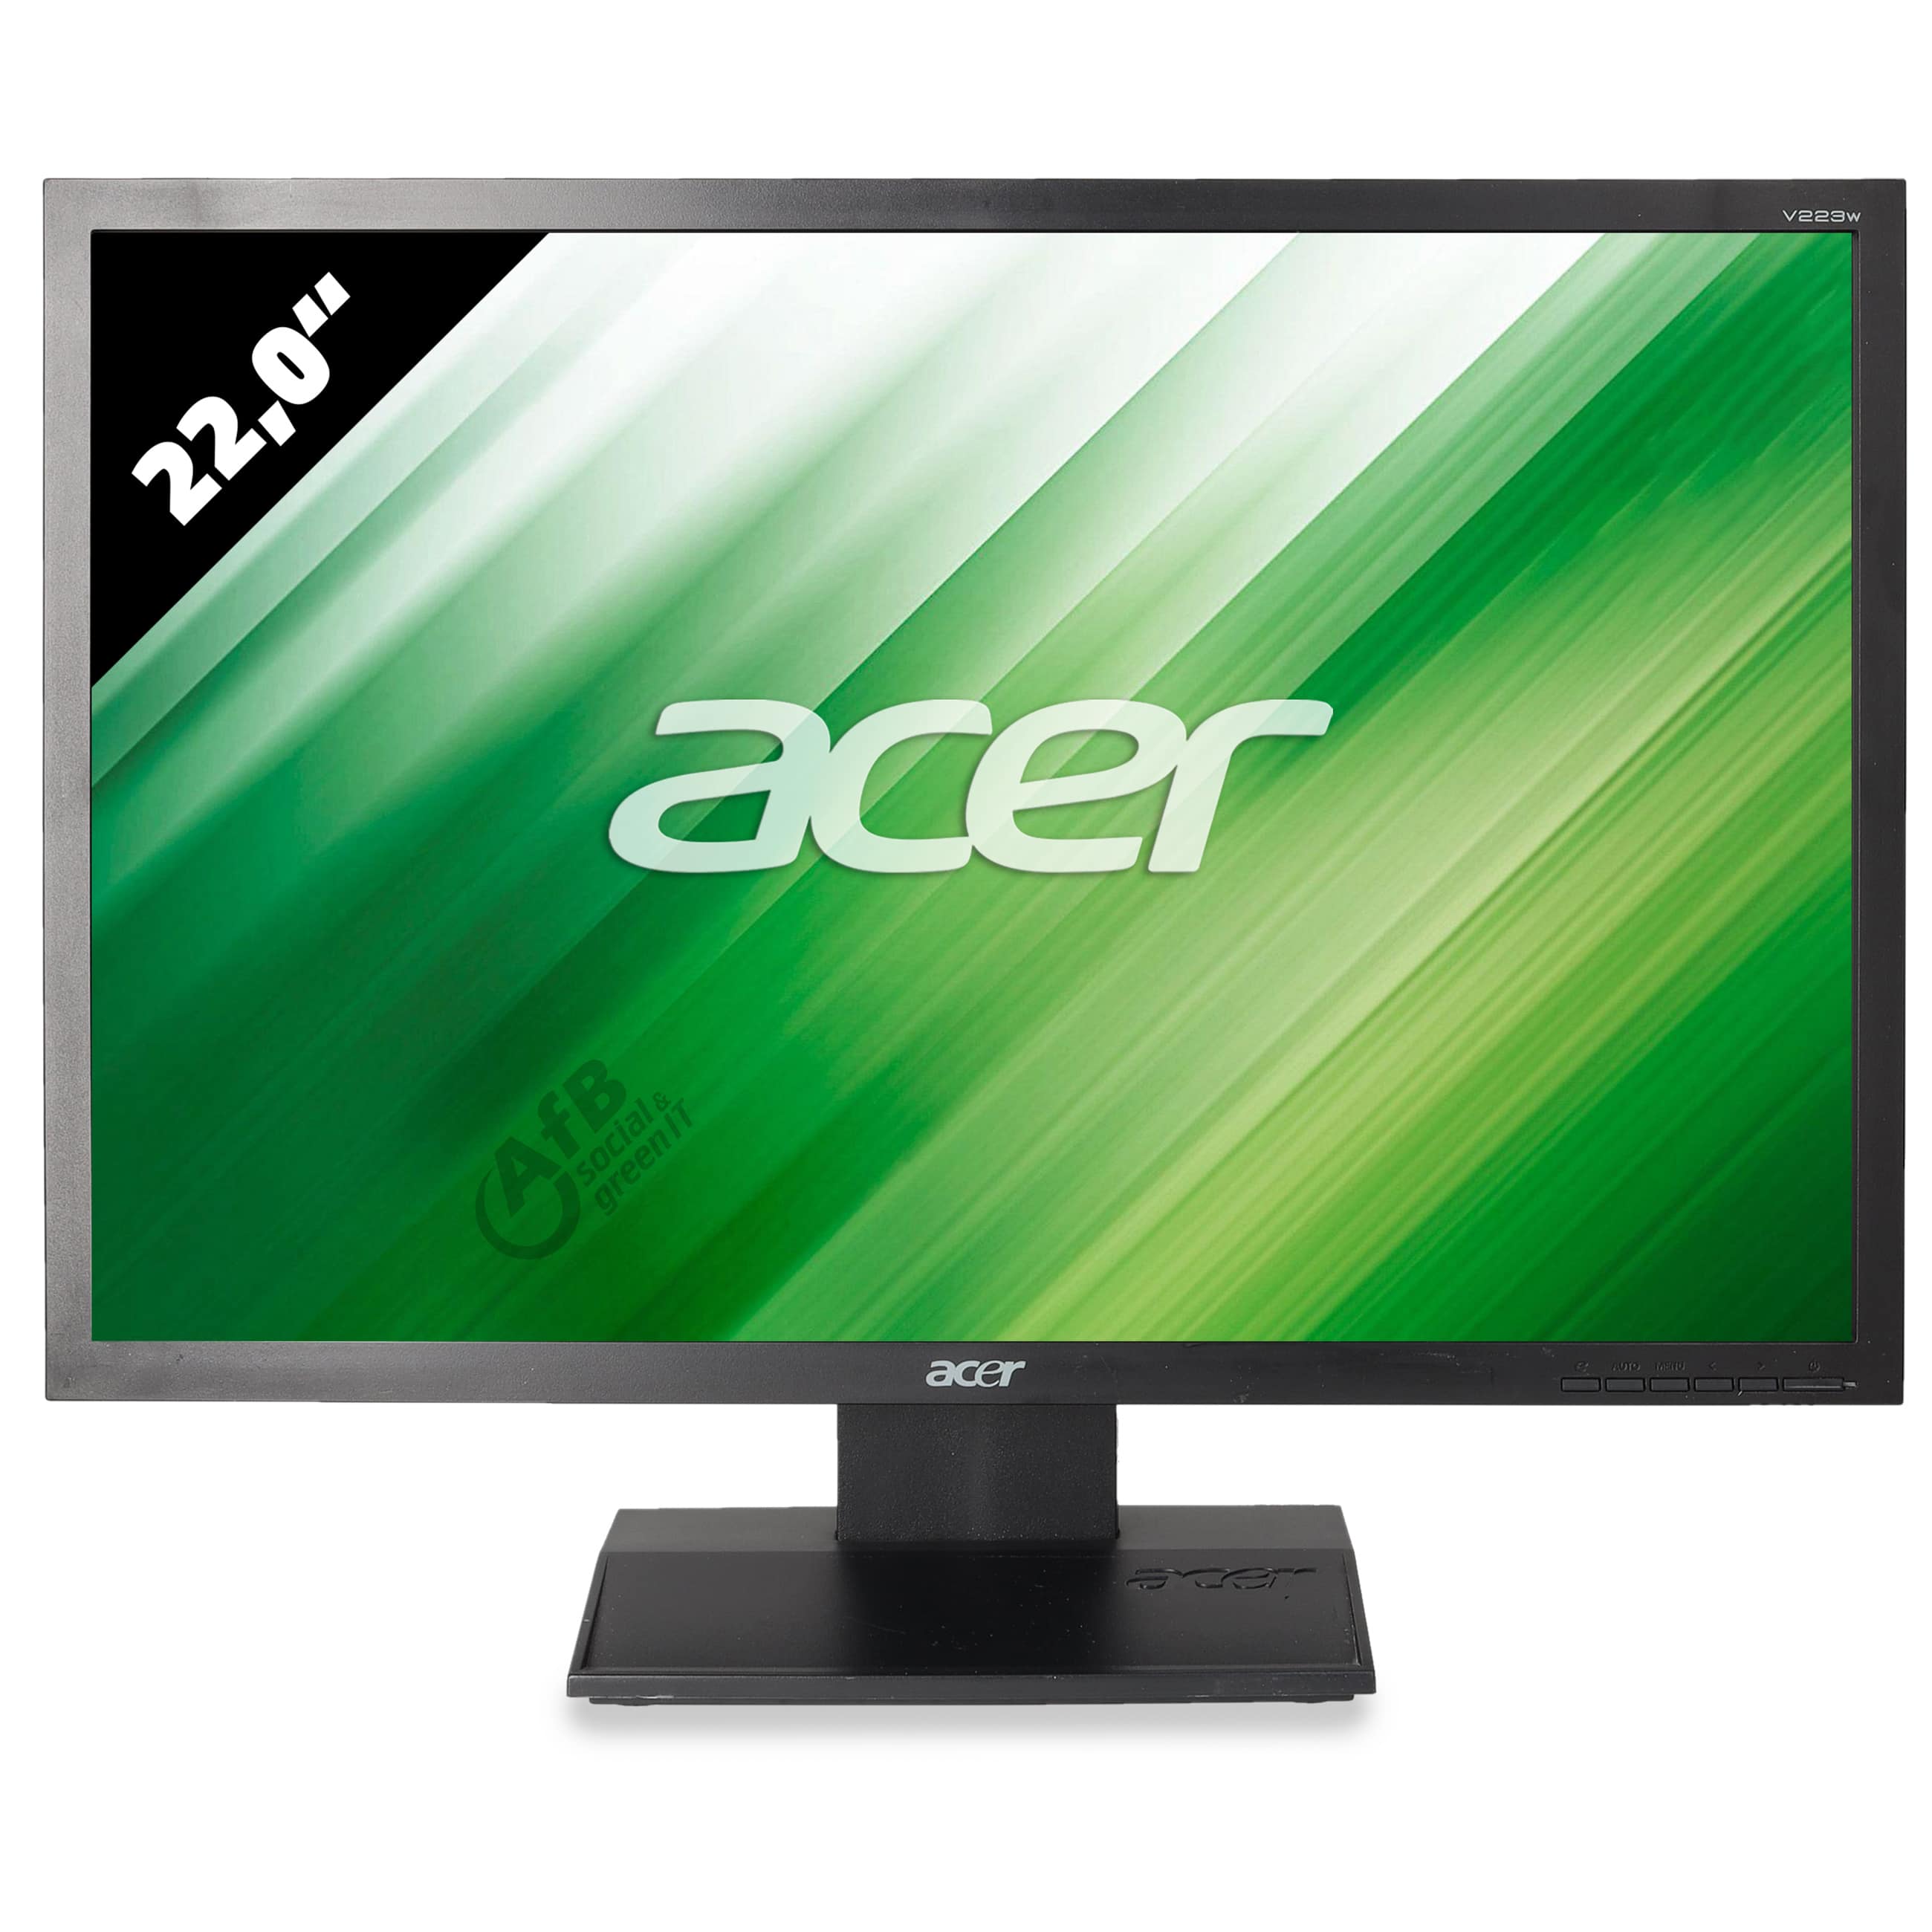 Acer V223W - 1680 x 1050 - WSXGA+